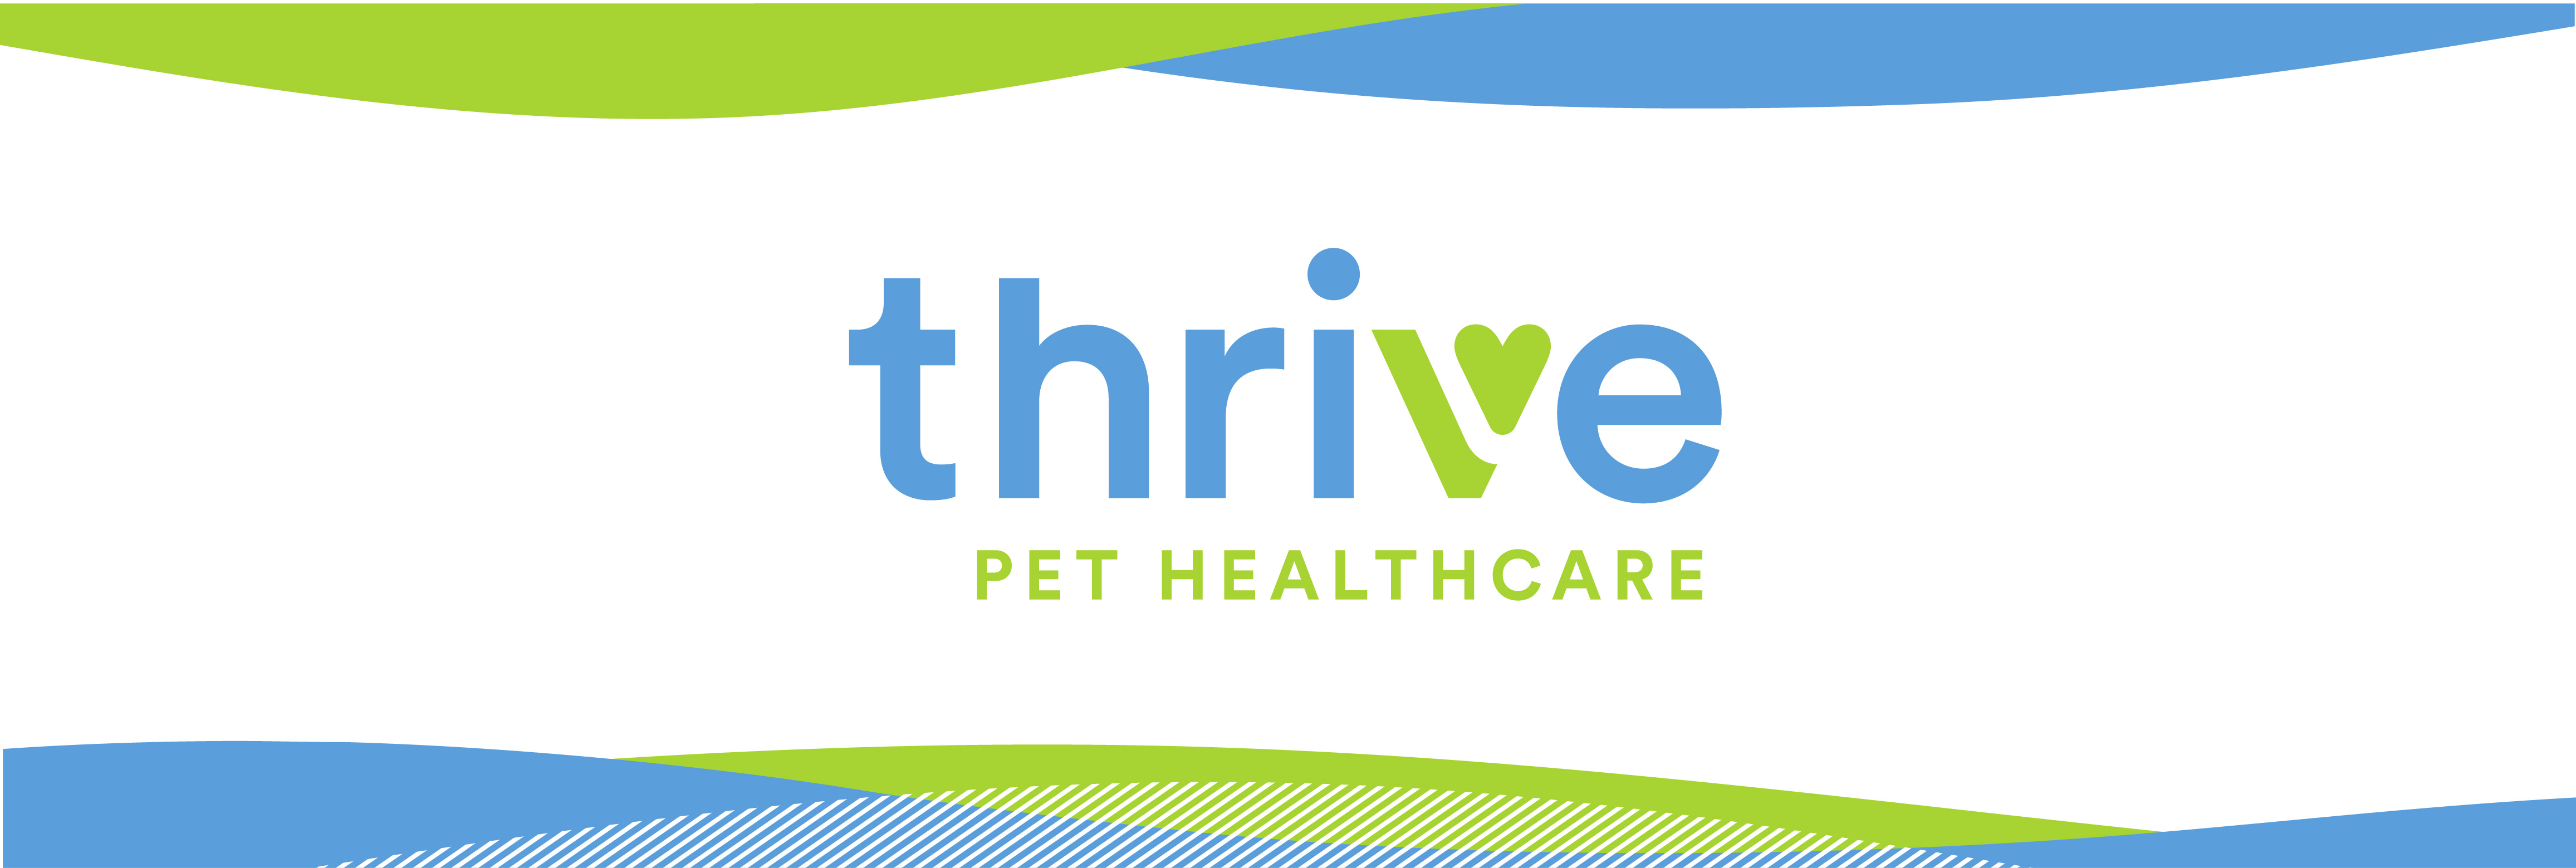 Thrive Pet Healthcare reviews | 4807 183 A - Cedar Park TX